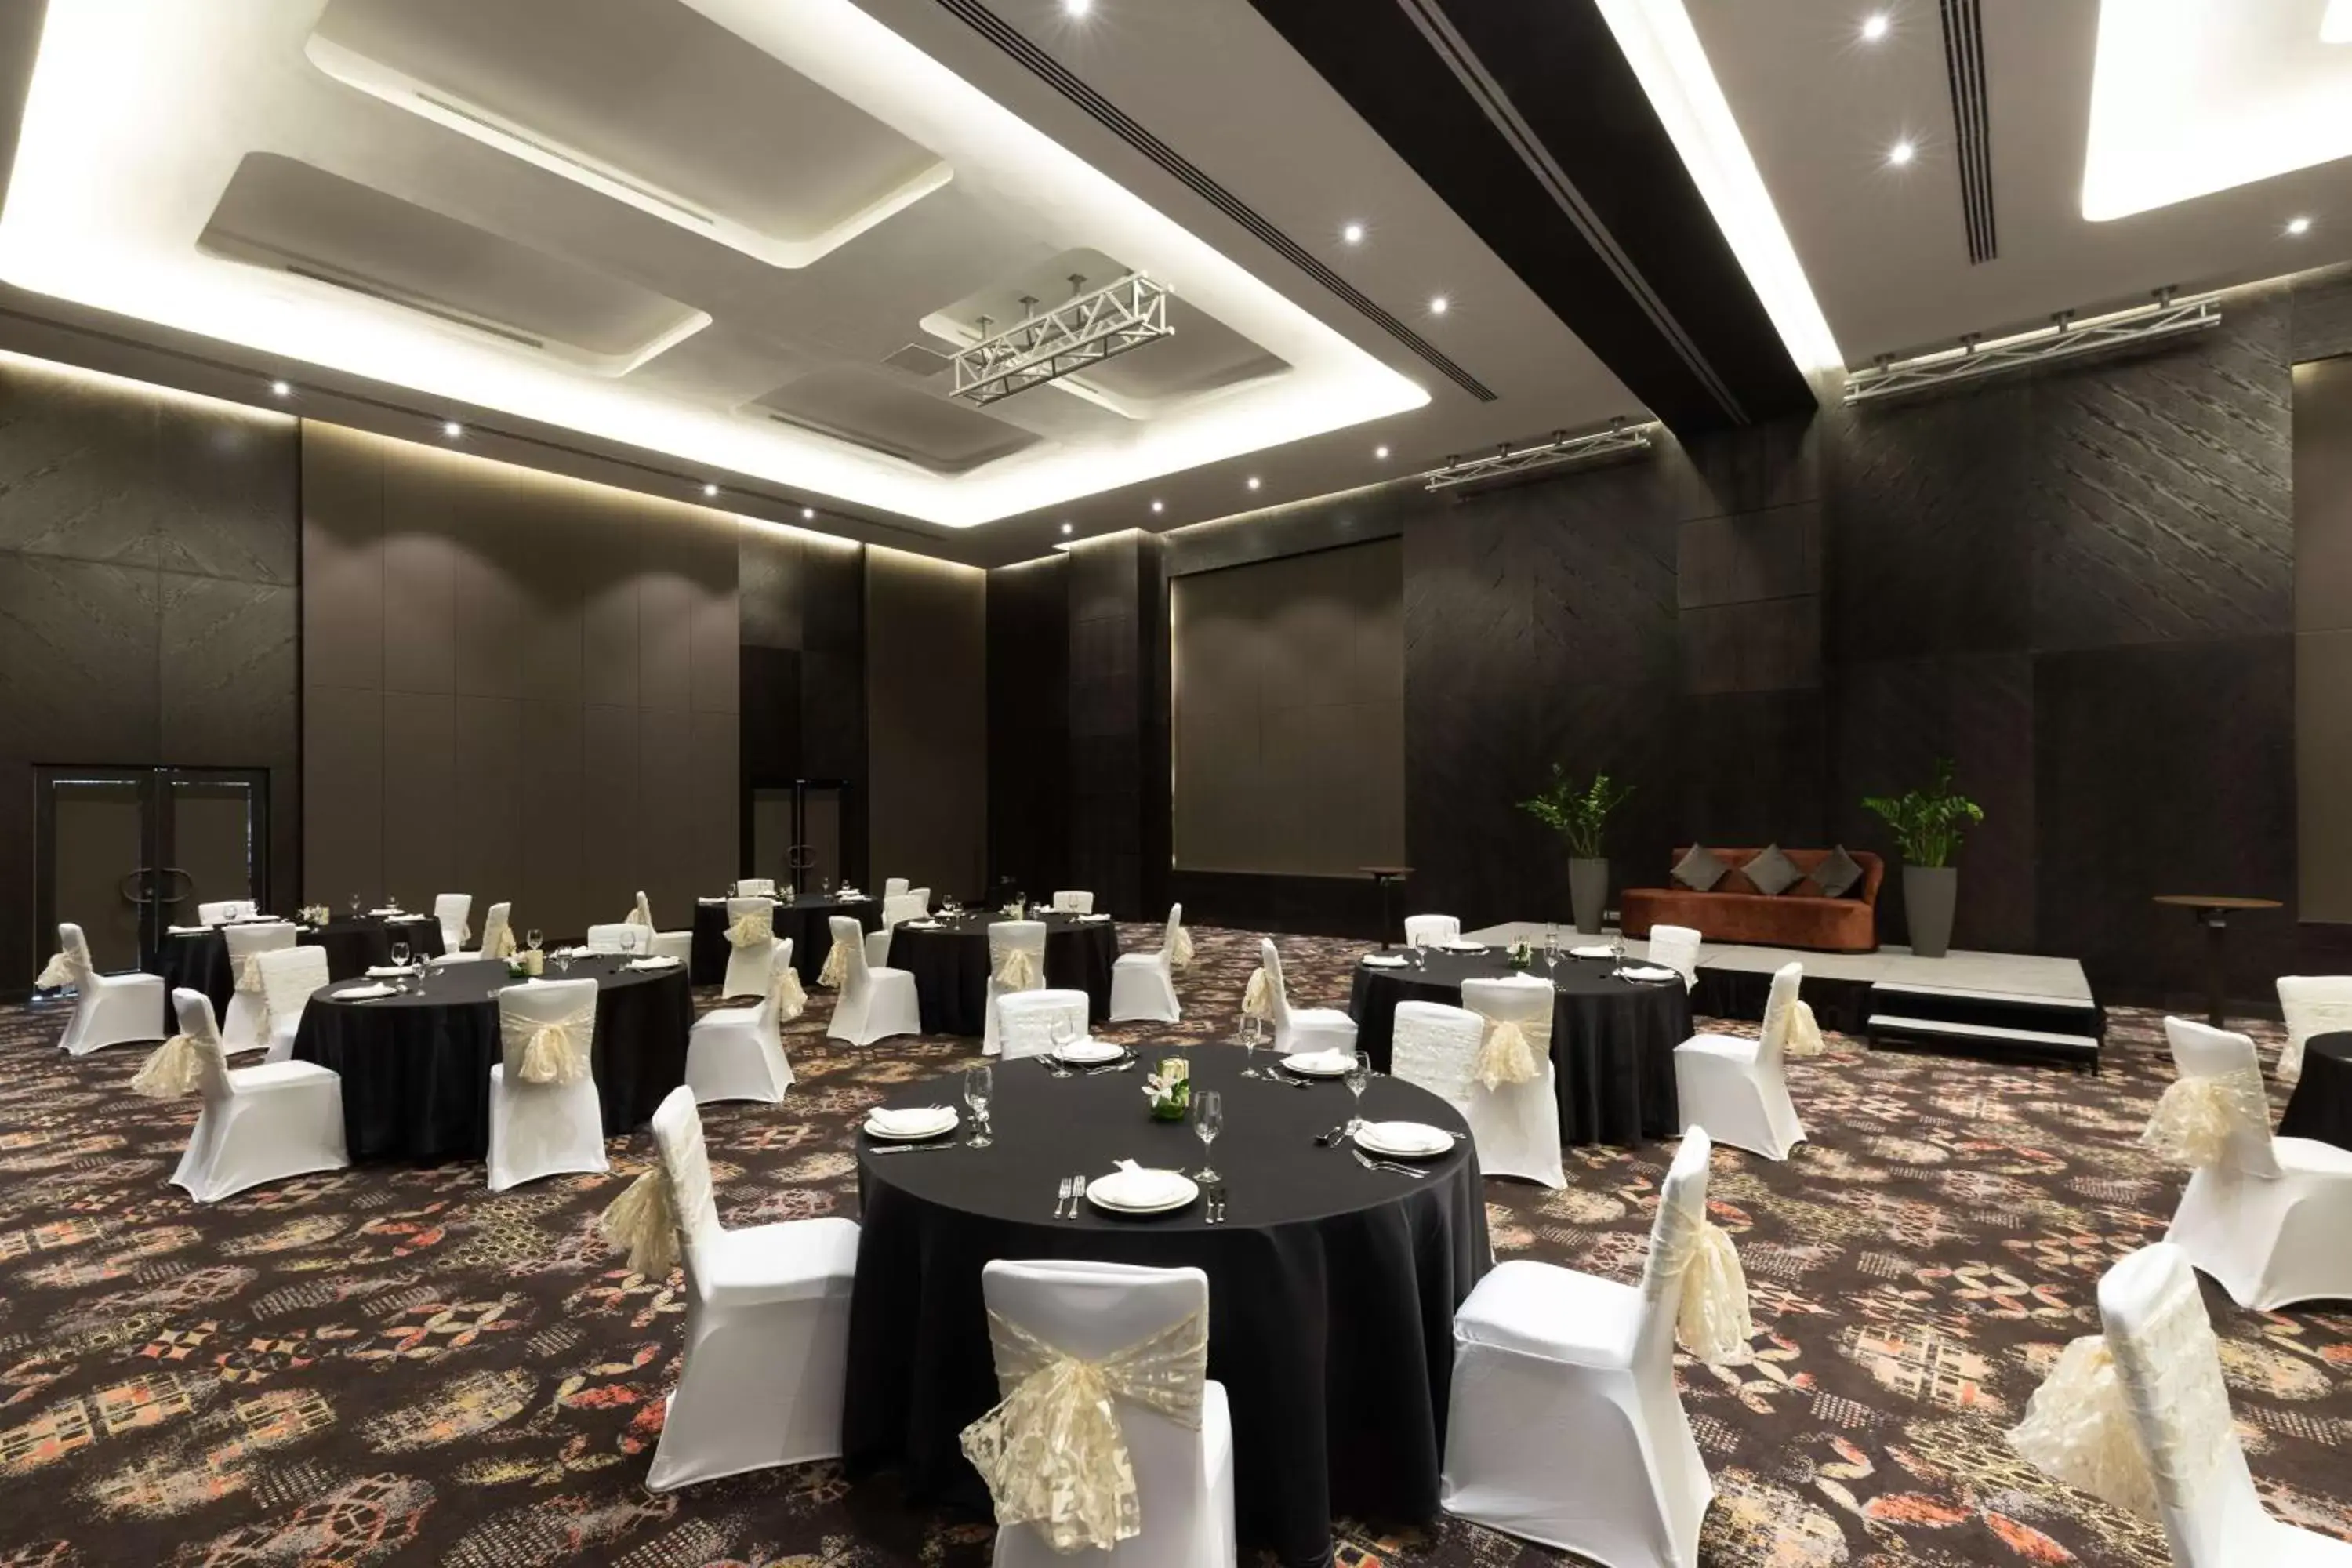 Banquet/Function facilities, Banquet Facilities in Radisson Blu Hotel, Dubai Canal View